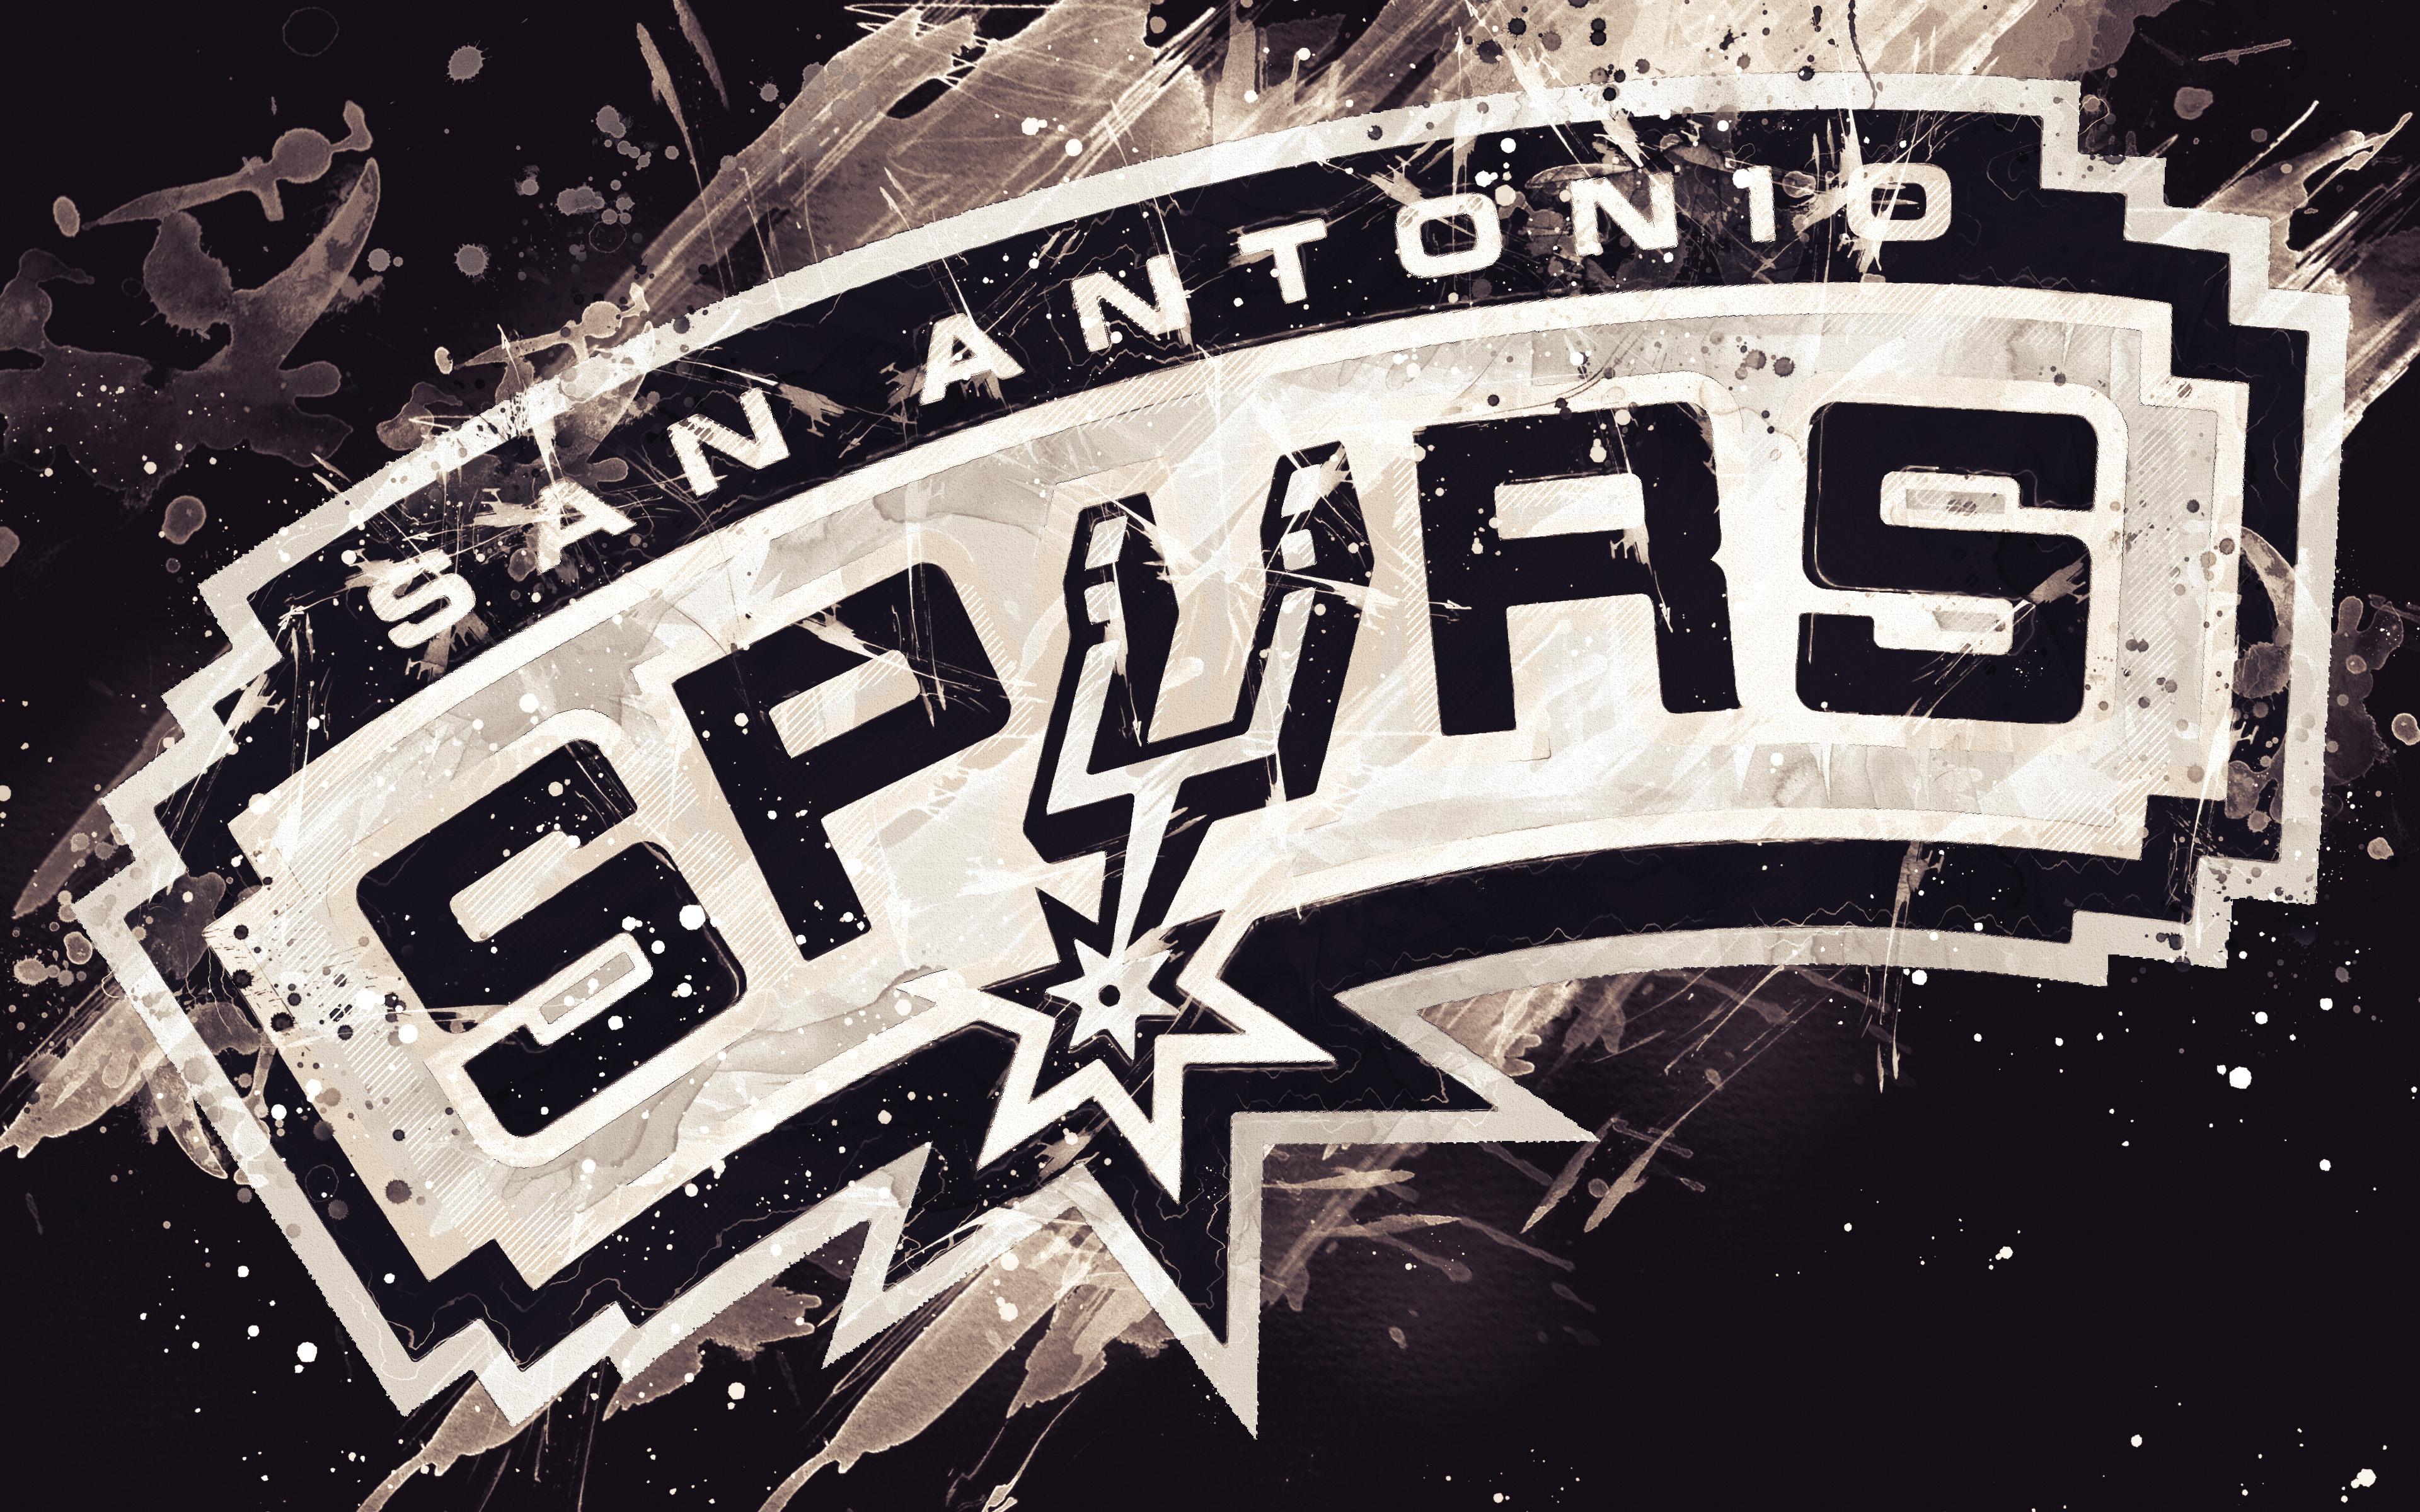 San Antonio Spurs Logo 4k Ultra HD Wallpaper